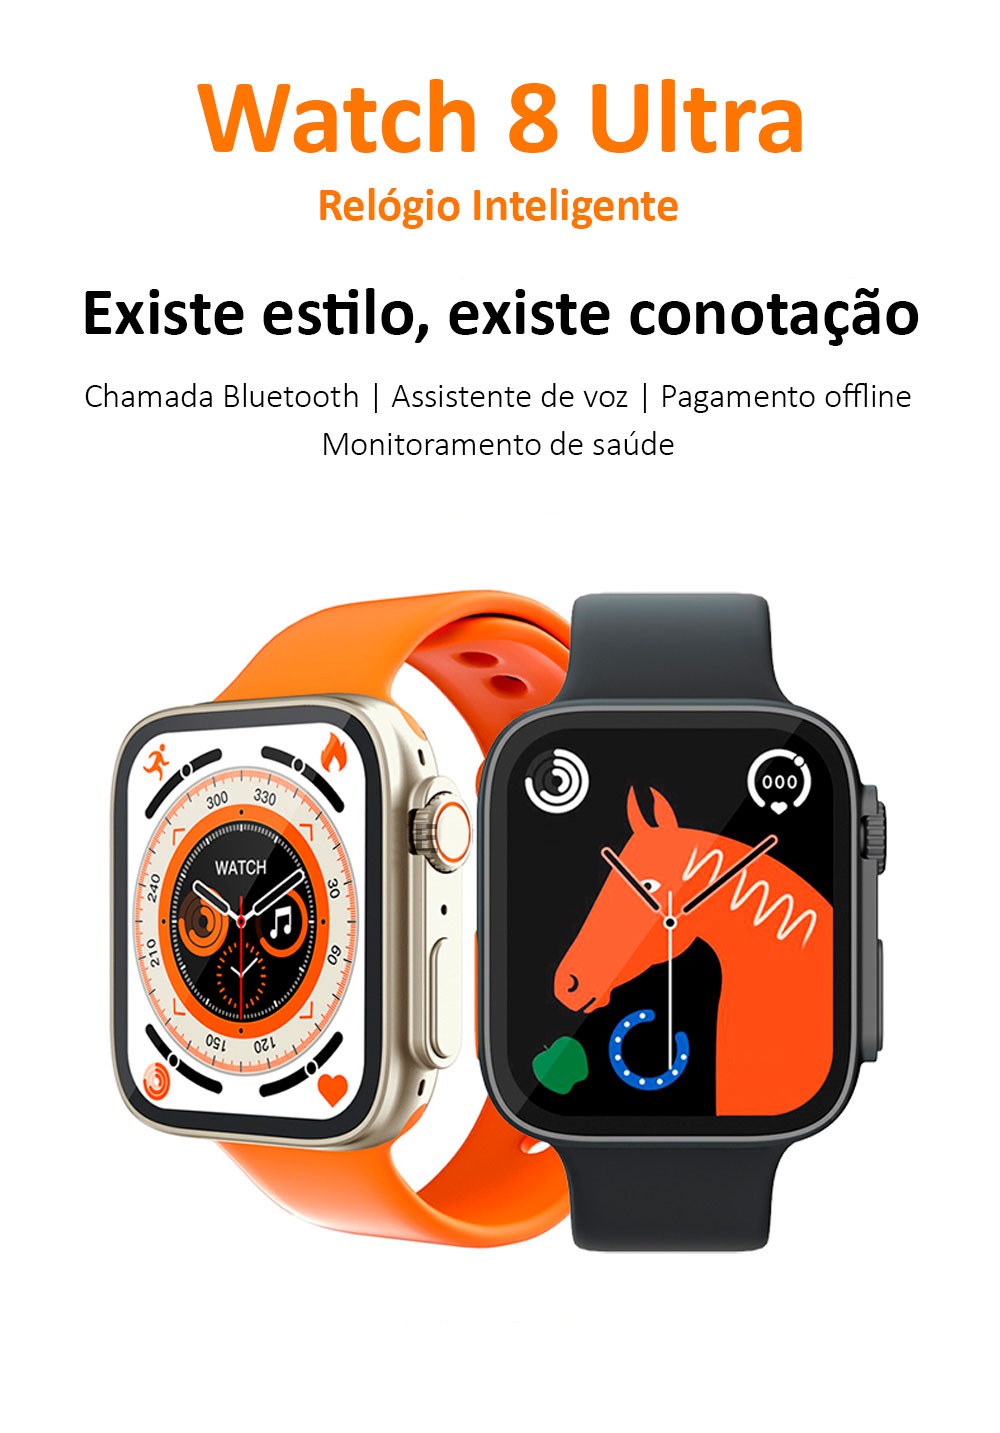 Imagem de dois Smartwatches Watch 8 Ultra (Modelo 2023) lado a lado, mostrando seu design elegante e tecnologia avançada